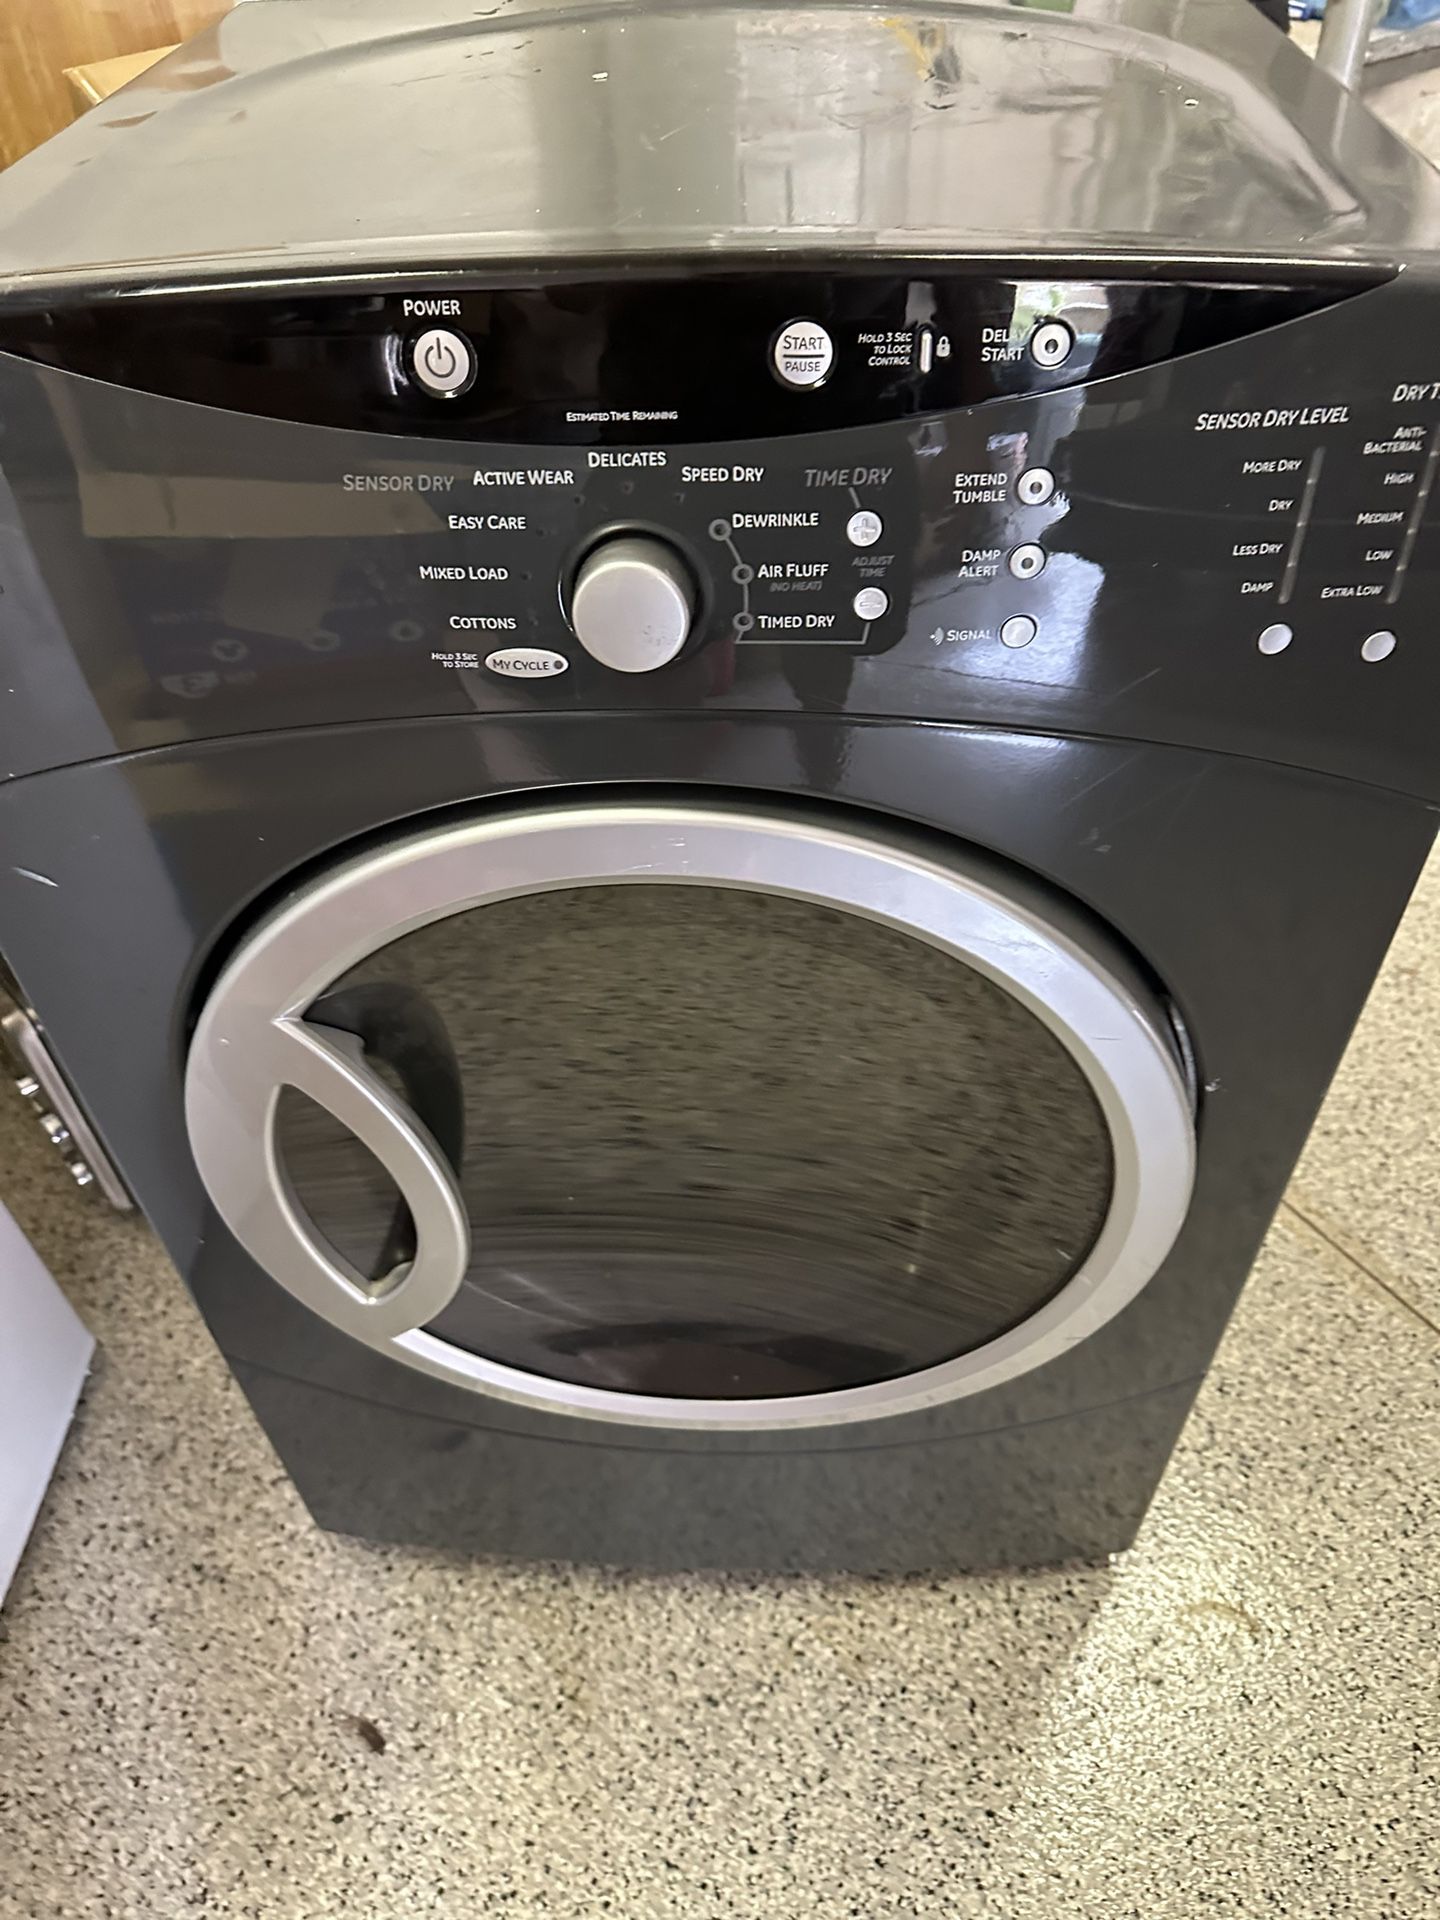 GE Dryer Washer